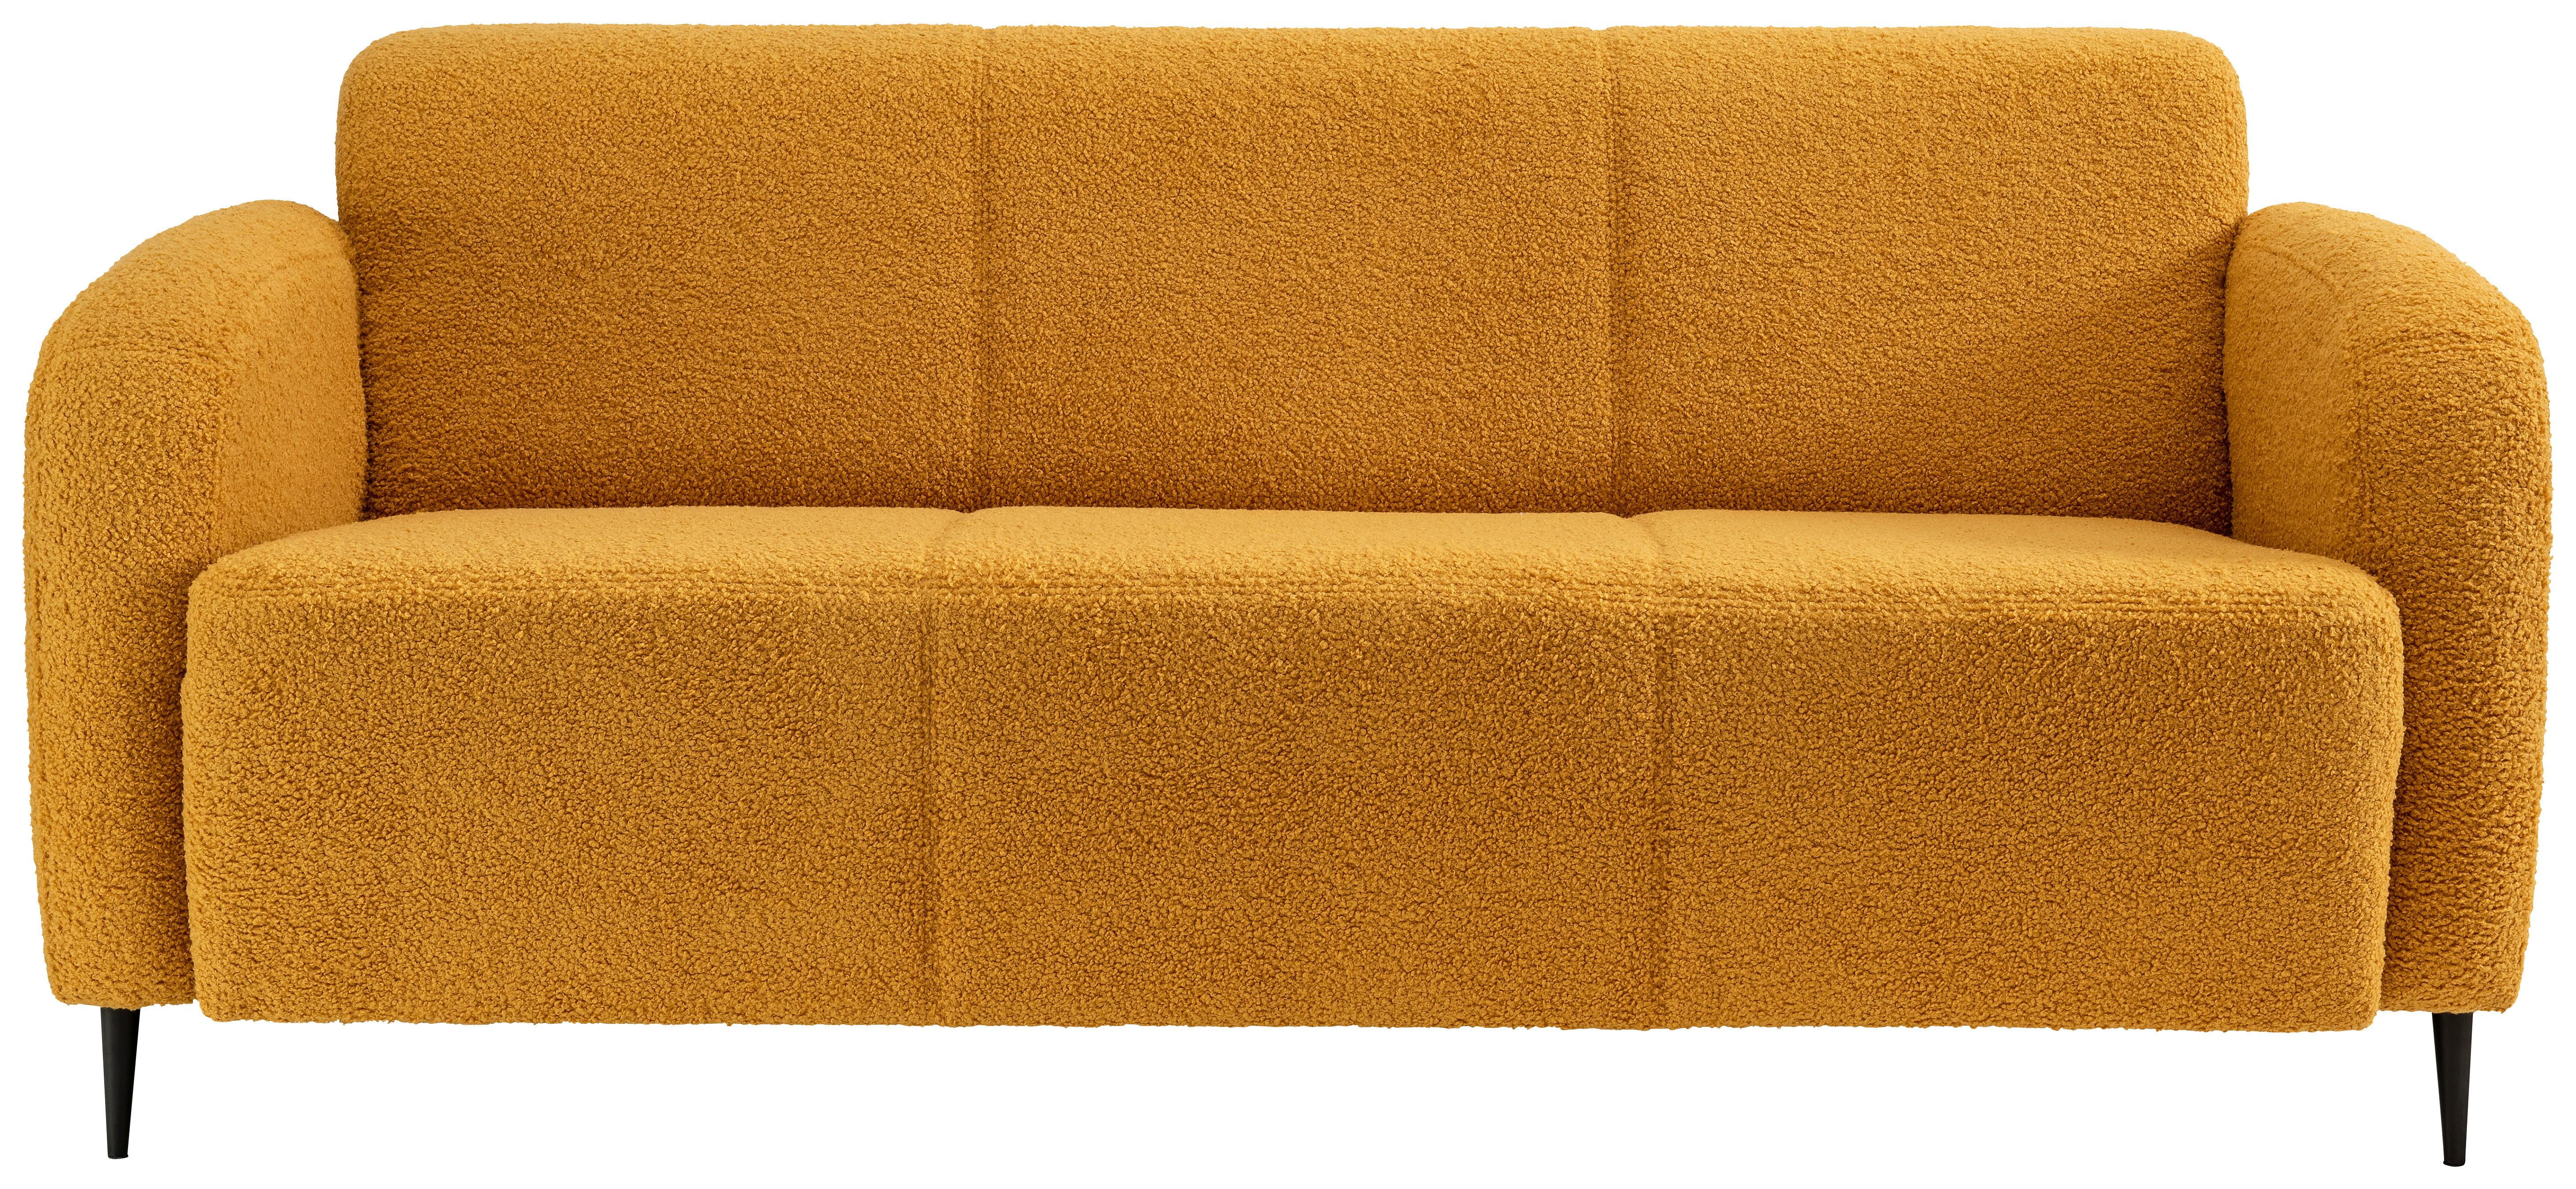 3-Sitzer-Sofa Marone Gelb Teddystoff